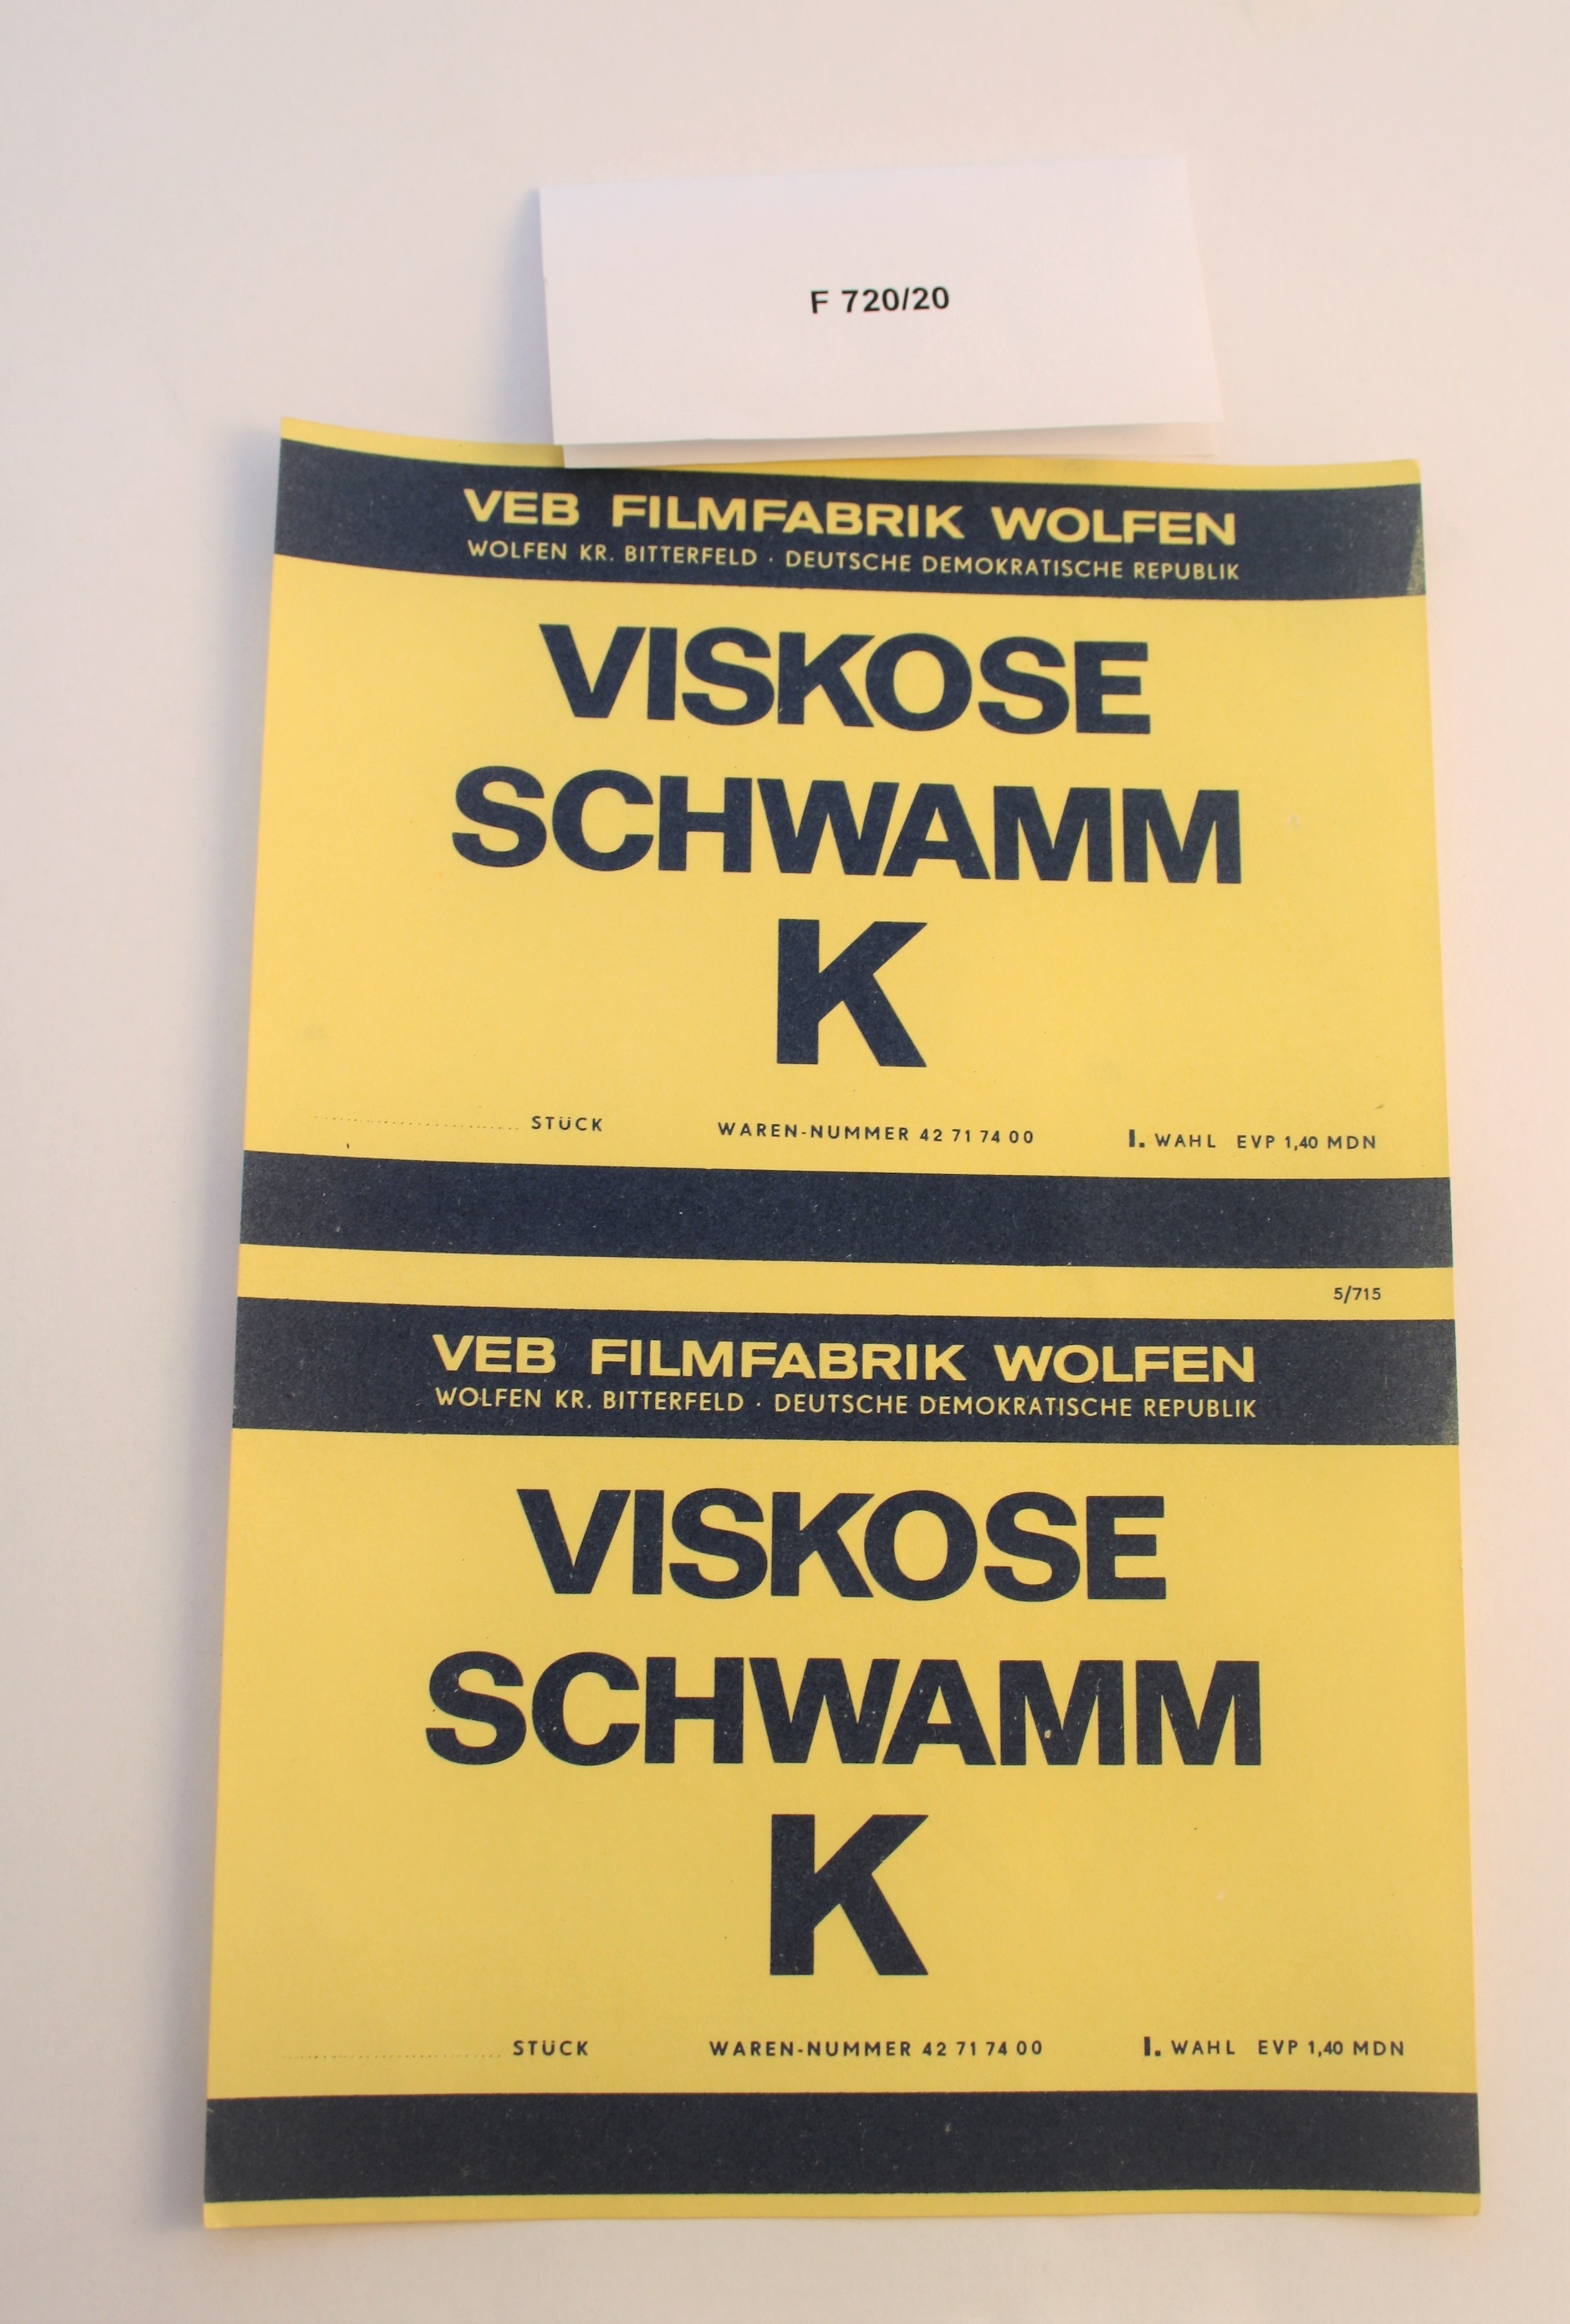 Produktzettel Viskose Schwamm K (Industrie- und Filmmuseum Wolfen CC BY-NC-SA)